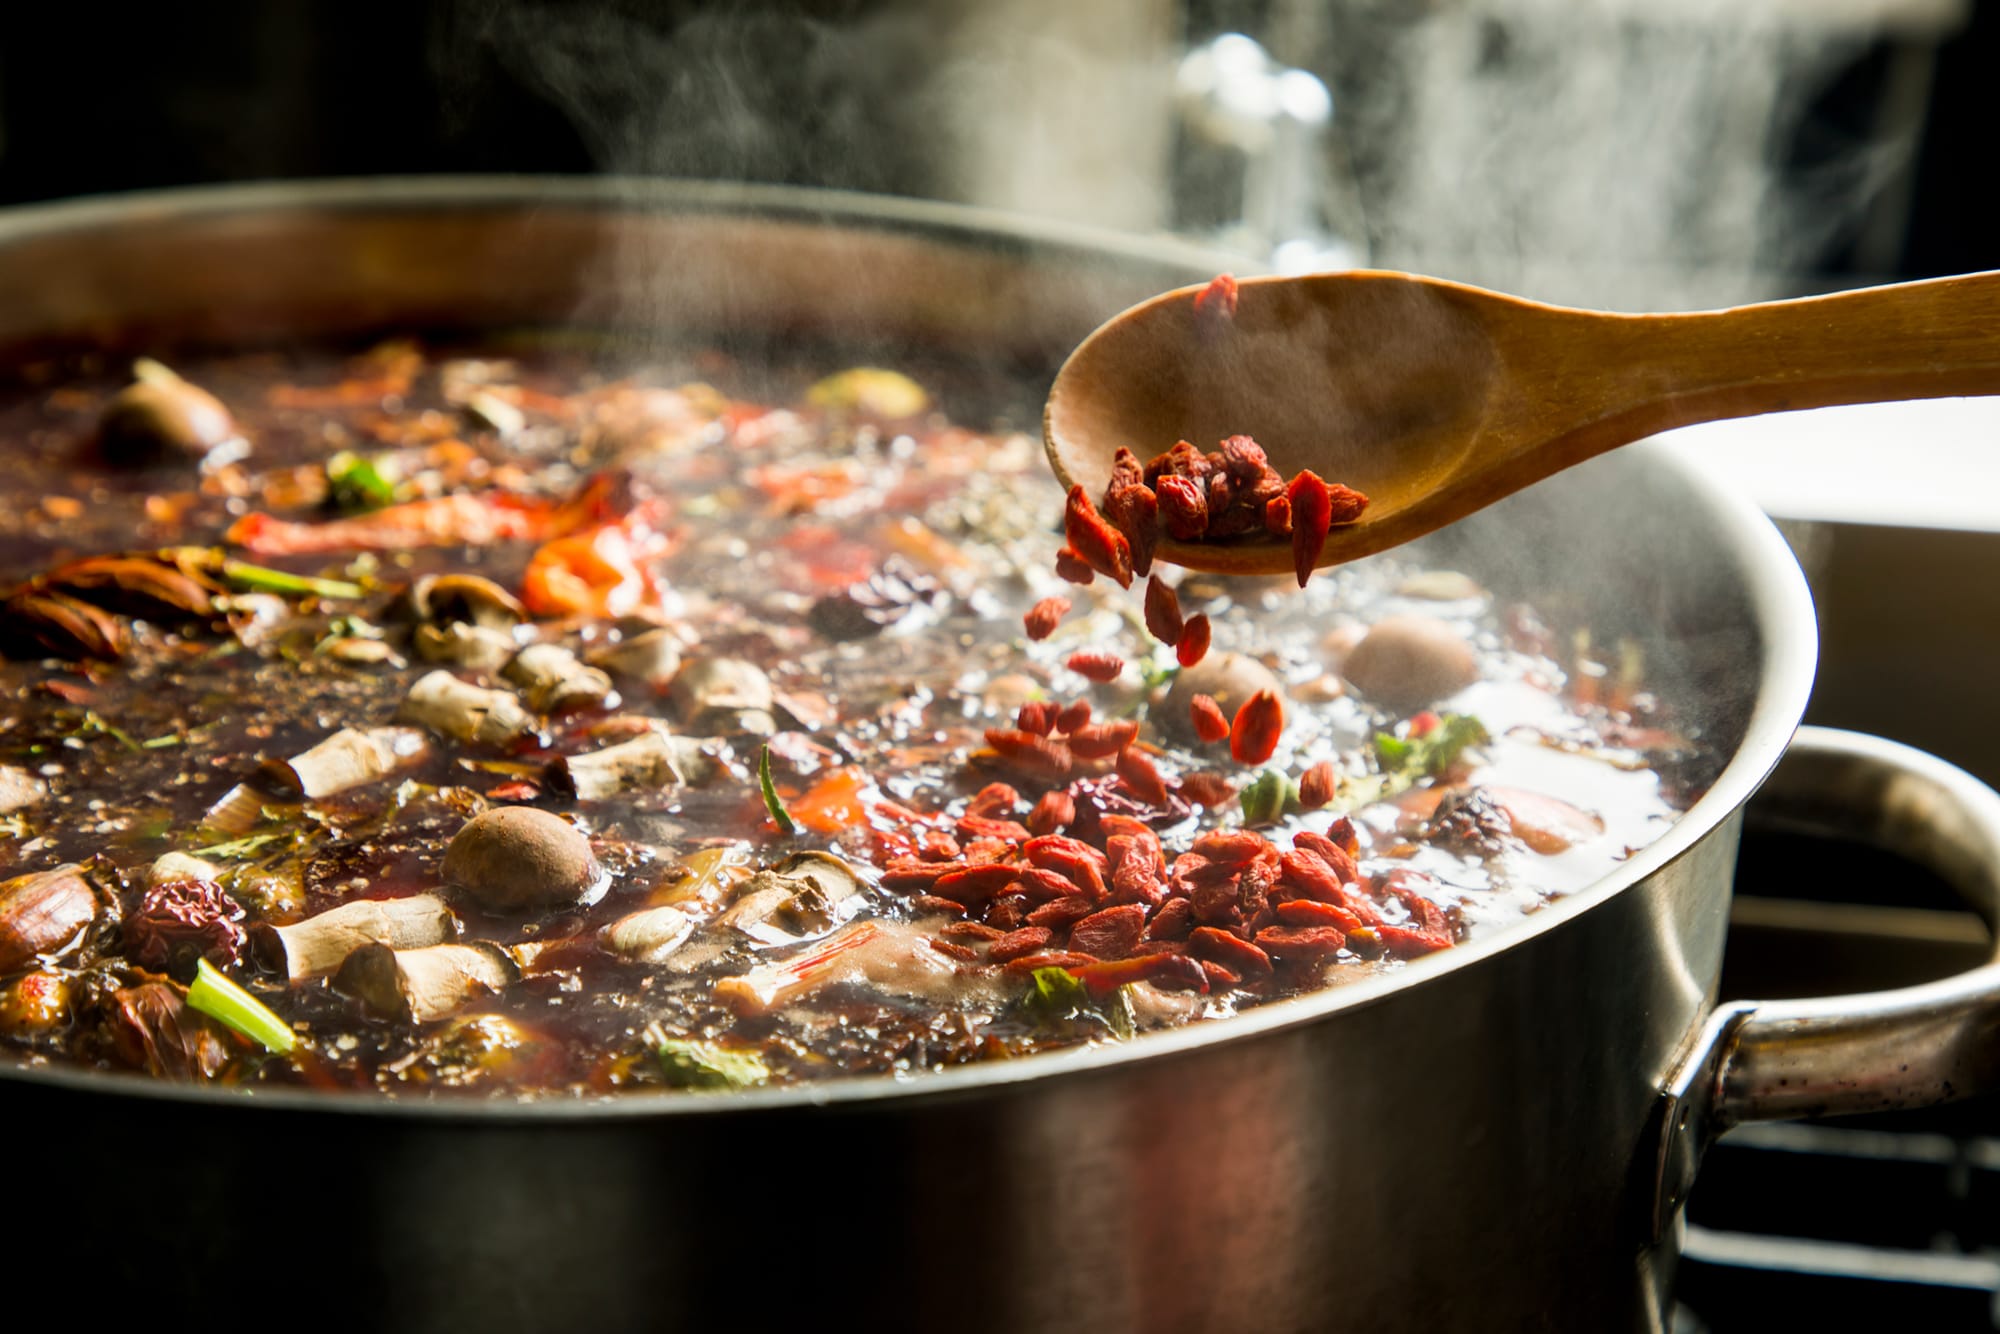 12種類以上の旬野菜から抽出したエキスに35種類以上の漢方やハーブなどを配合し、煮込んだスープが体にしみわたる。